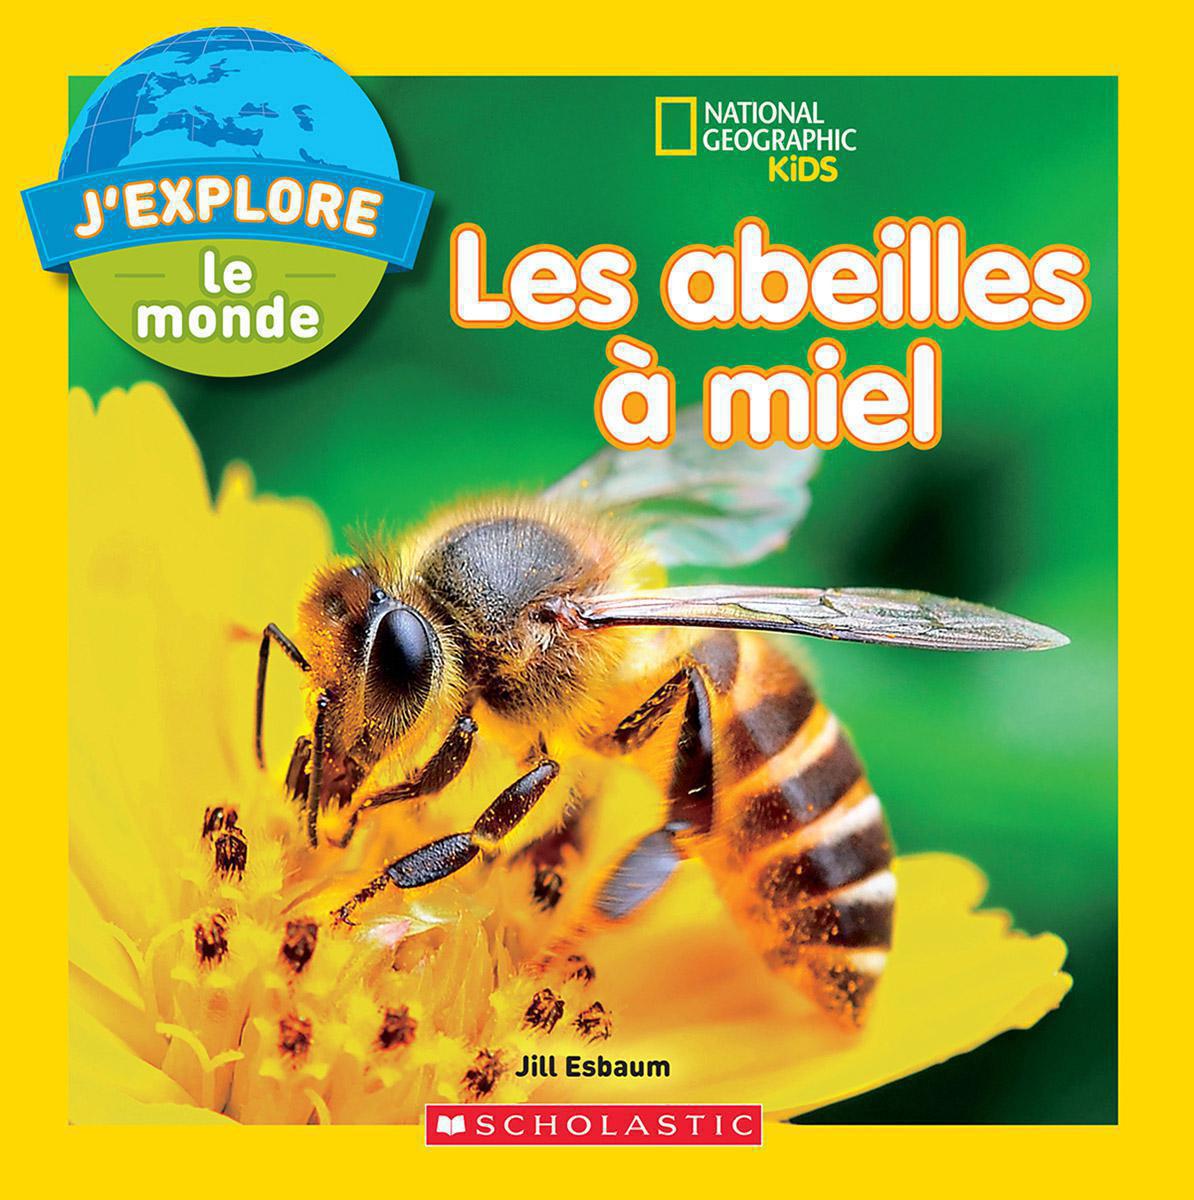  National Geographic Kids : J'explore le monde : Les abeilles à miel 